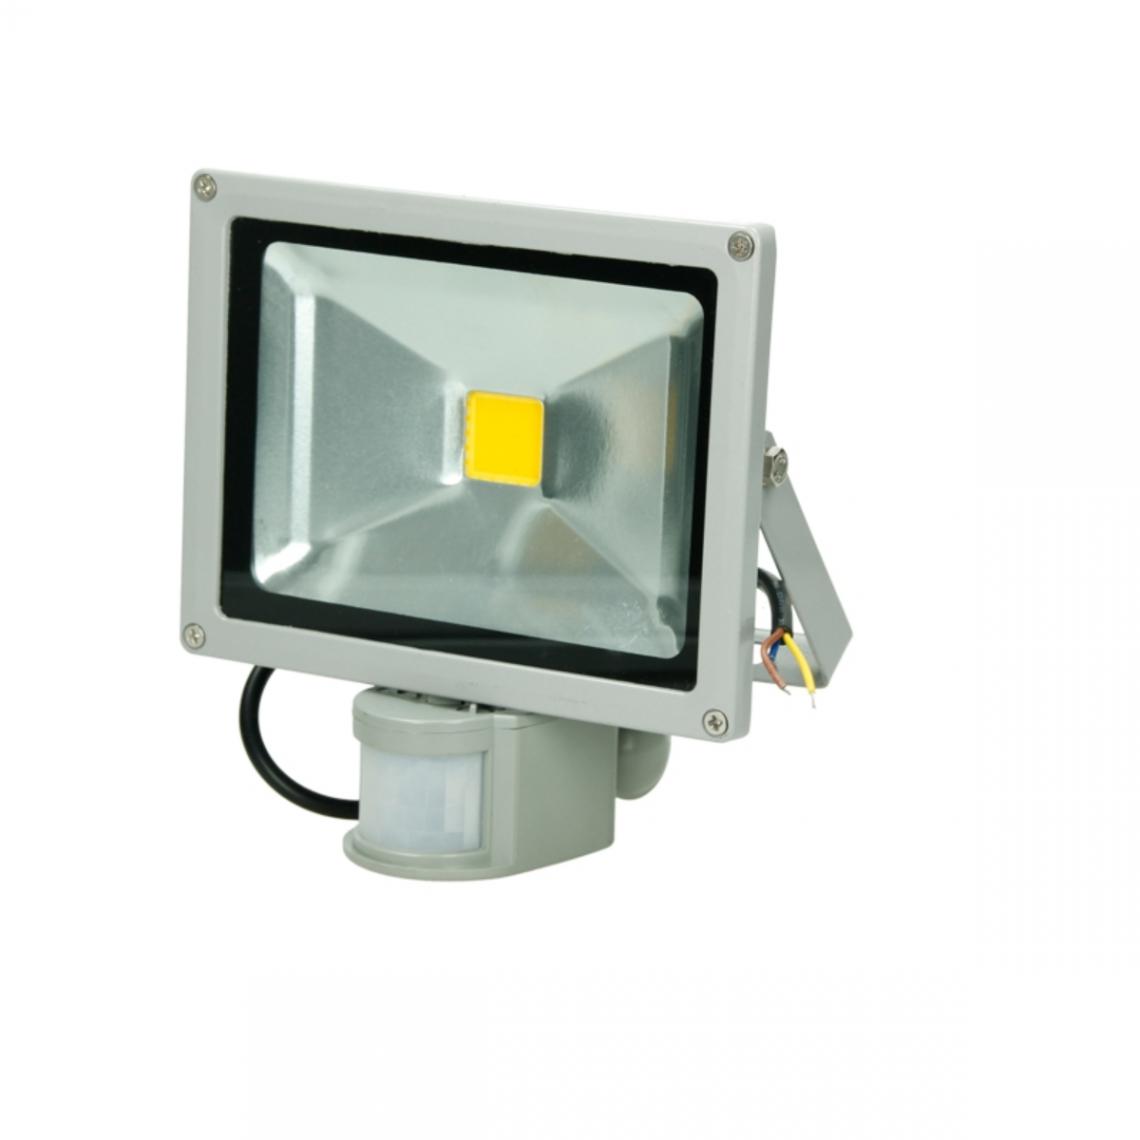 Ecd Germany - ECD Germany Projecteur LED extérieur IP65 spot lumière 20W avec capteur de mouvement - Projecteurs LED